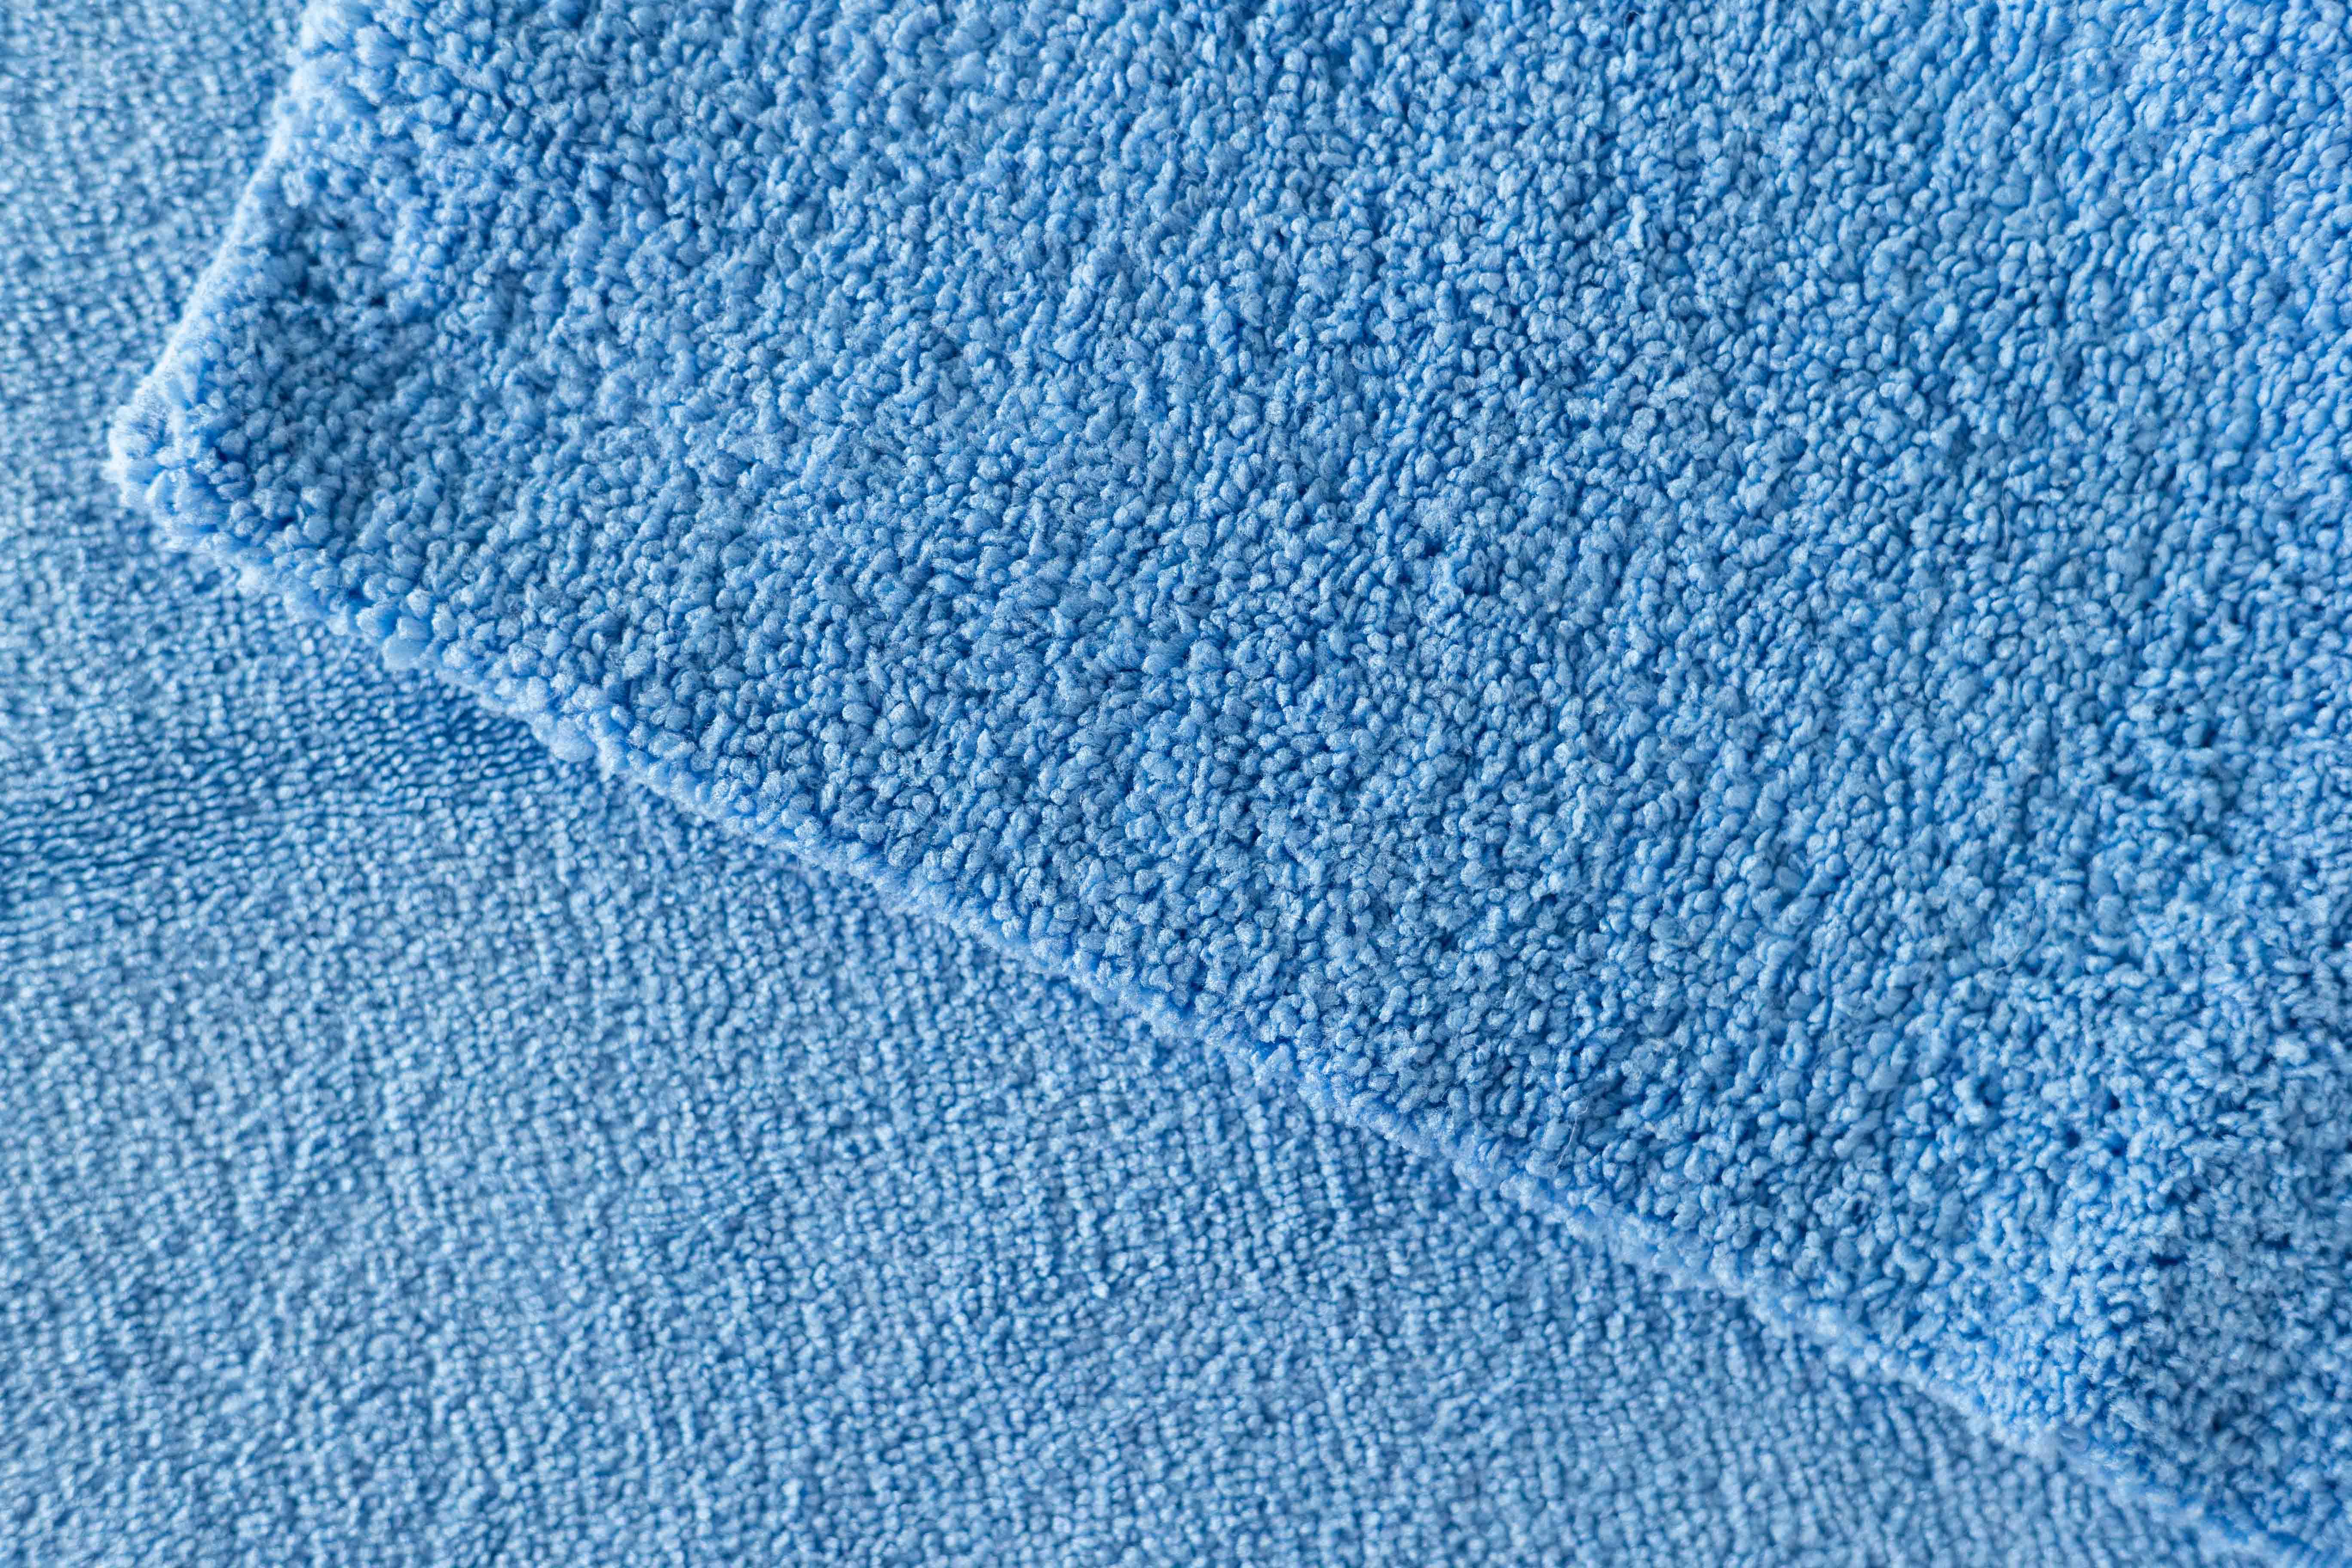 Microfibre Towel Polishing Blue 40x40cm 3317:20 .jpg